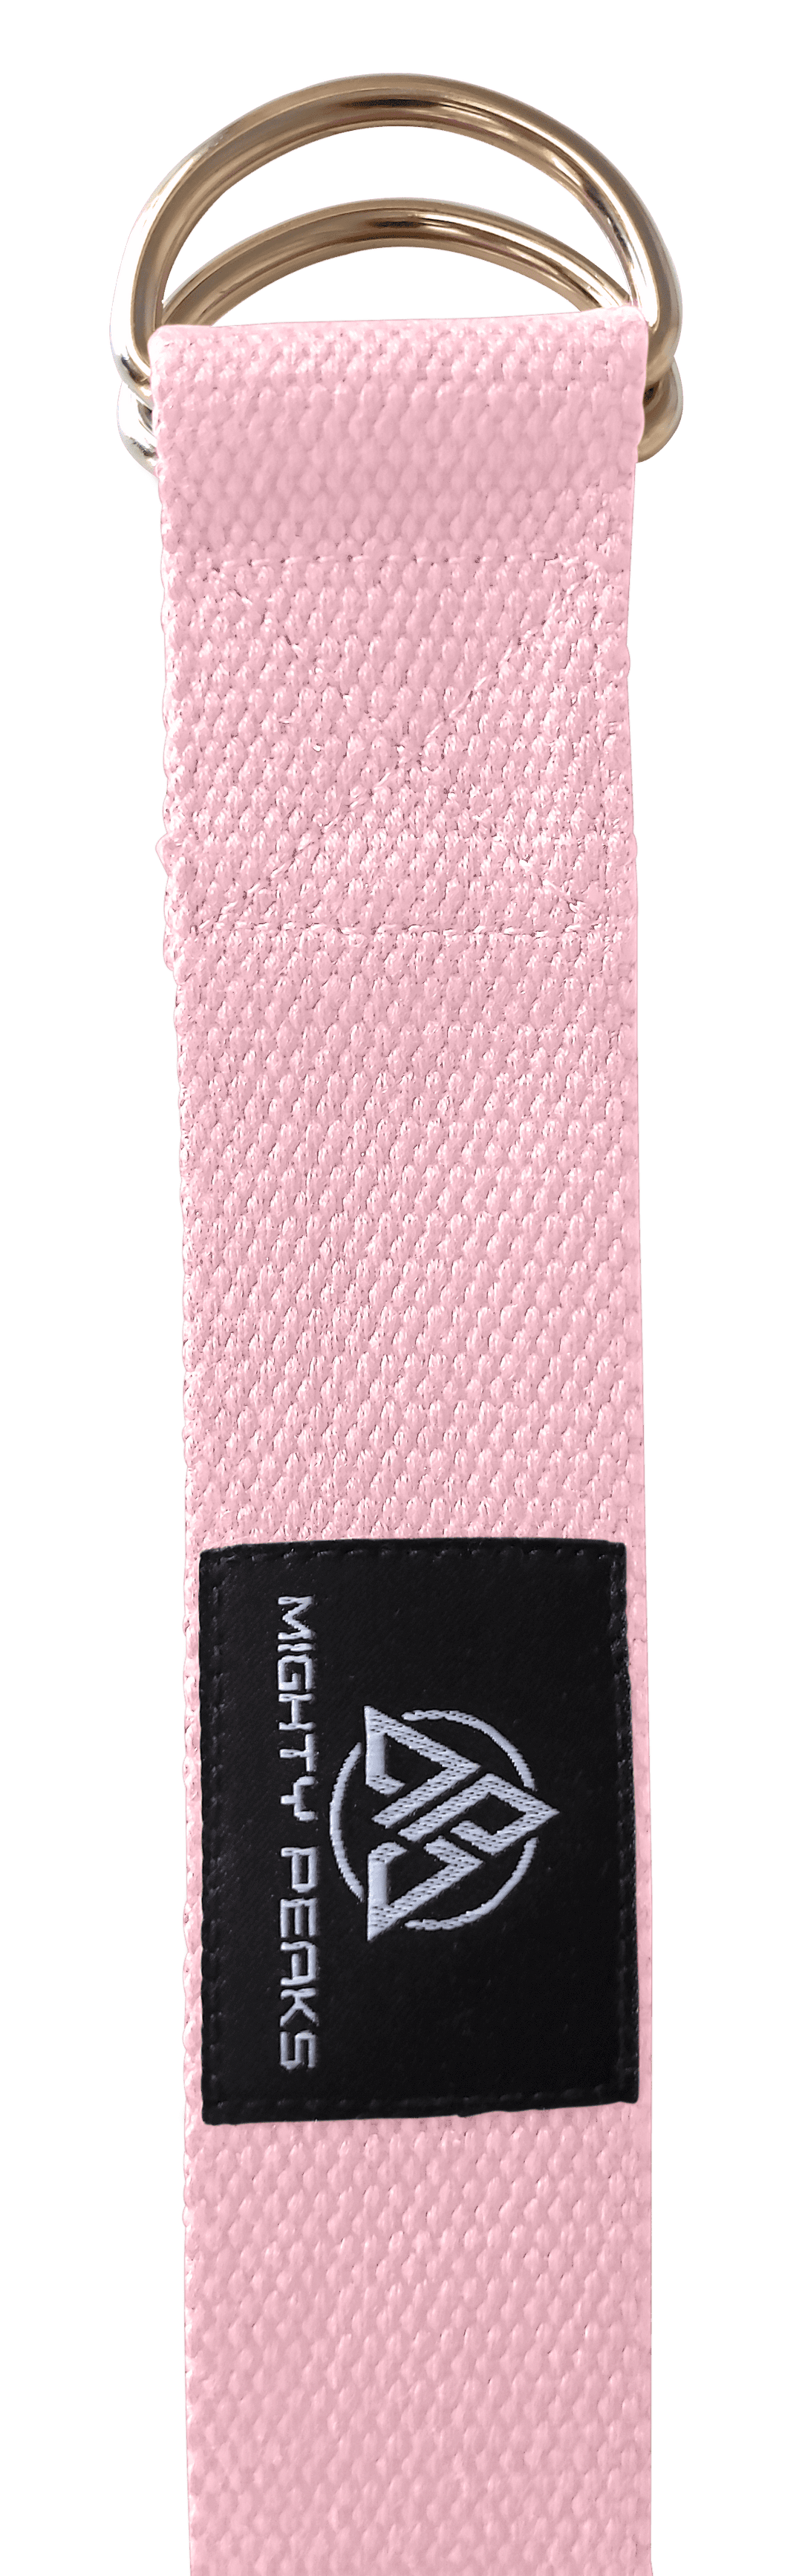 Yoga-Gurt aus 100% Baumwolle - Yogaband